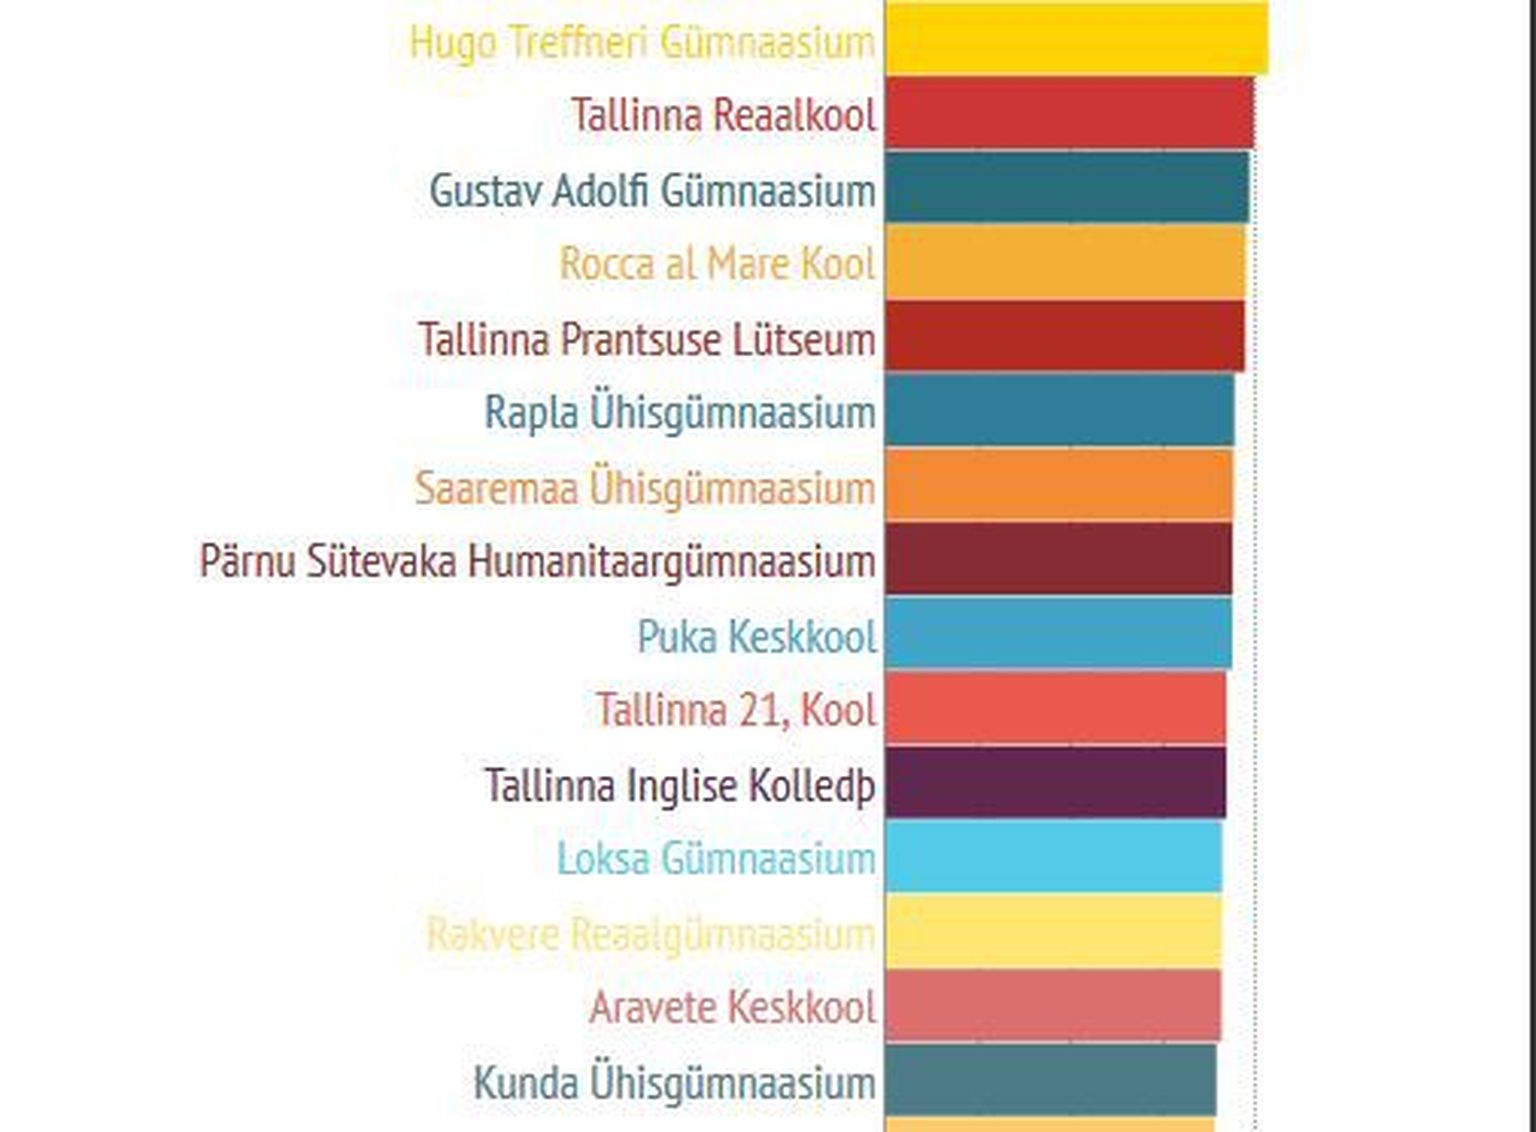 Результаты государственного экзамена по эстонскому языку за 2014 год.